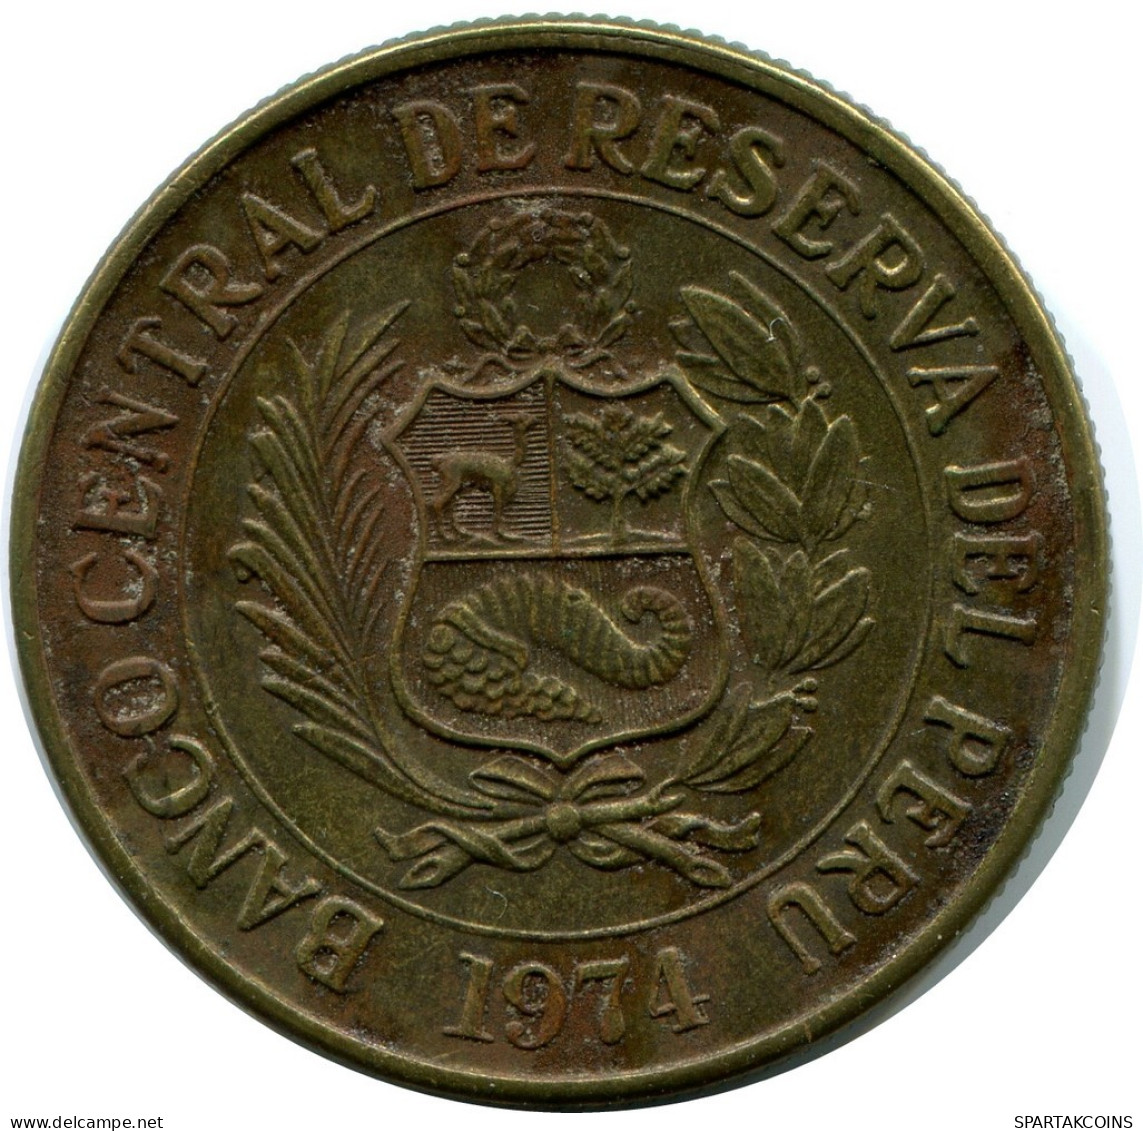 1 SOL 1974 PERU Münze #AZ081.D.A - Peru